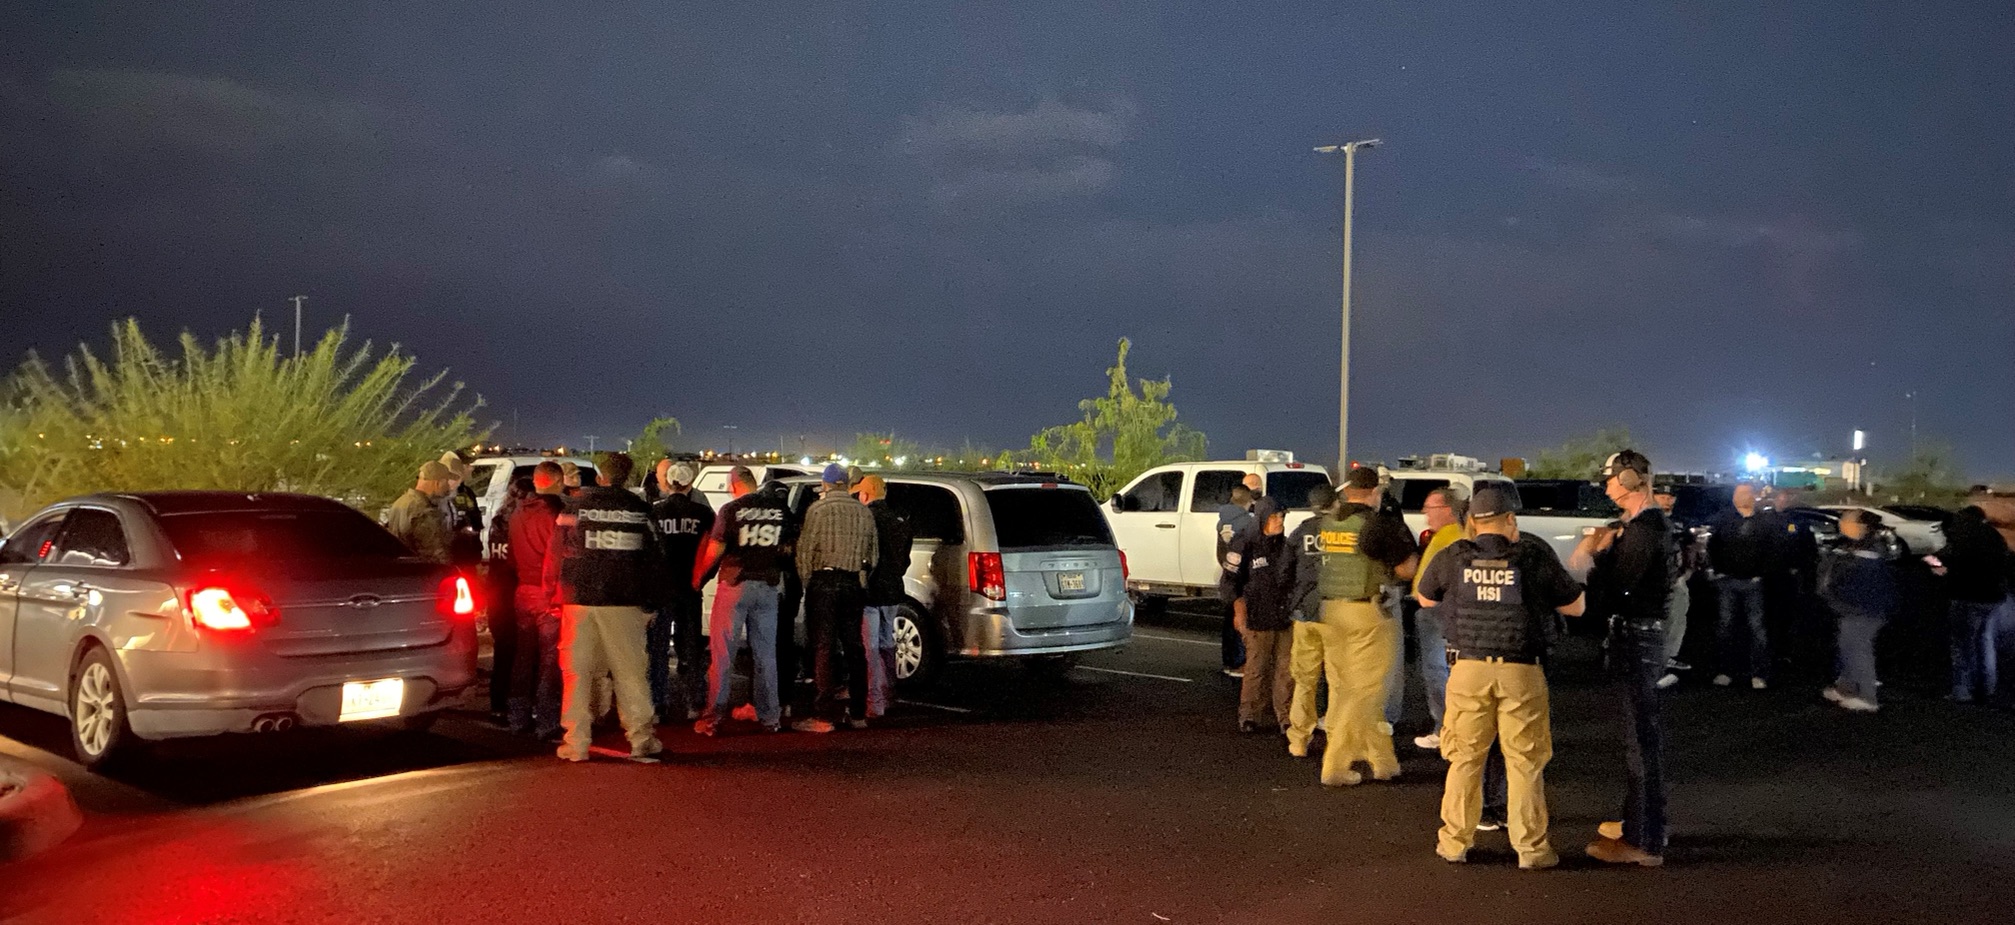 Agentes especiales de HSI El Paso y socios de la policía se preparan para efectuar órdenes de registro y arresto en un estacionamiento local de camiones y residencia del área en conexión con un caso de contrabando humano el jueves 30 de septiembre.